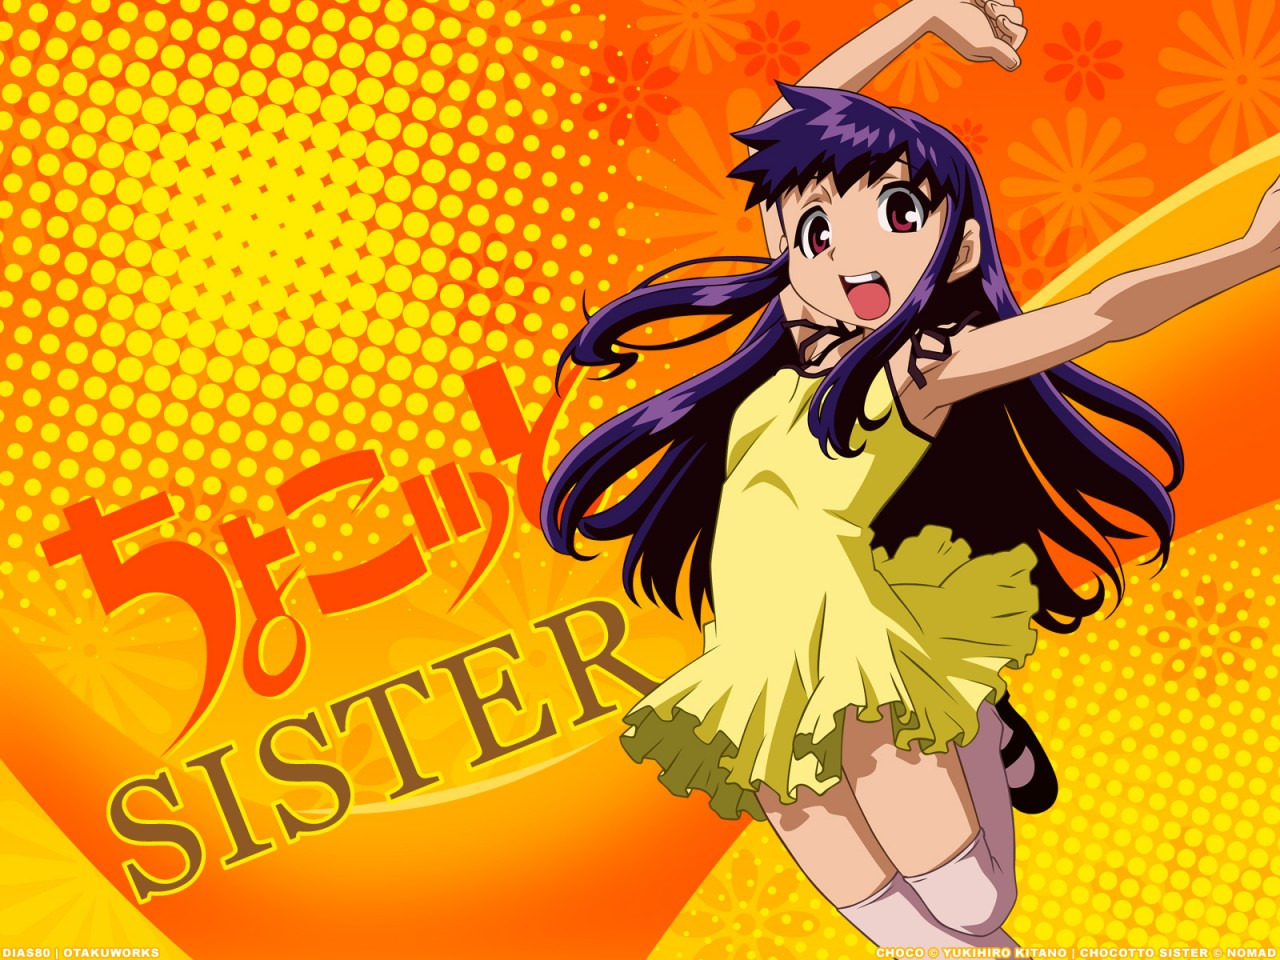 Anime Chocotto Sister